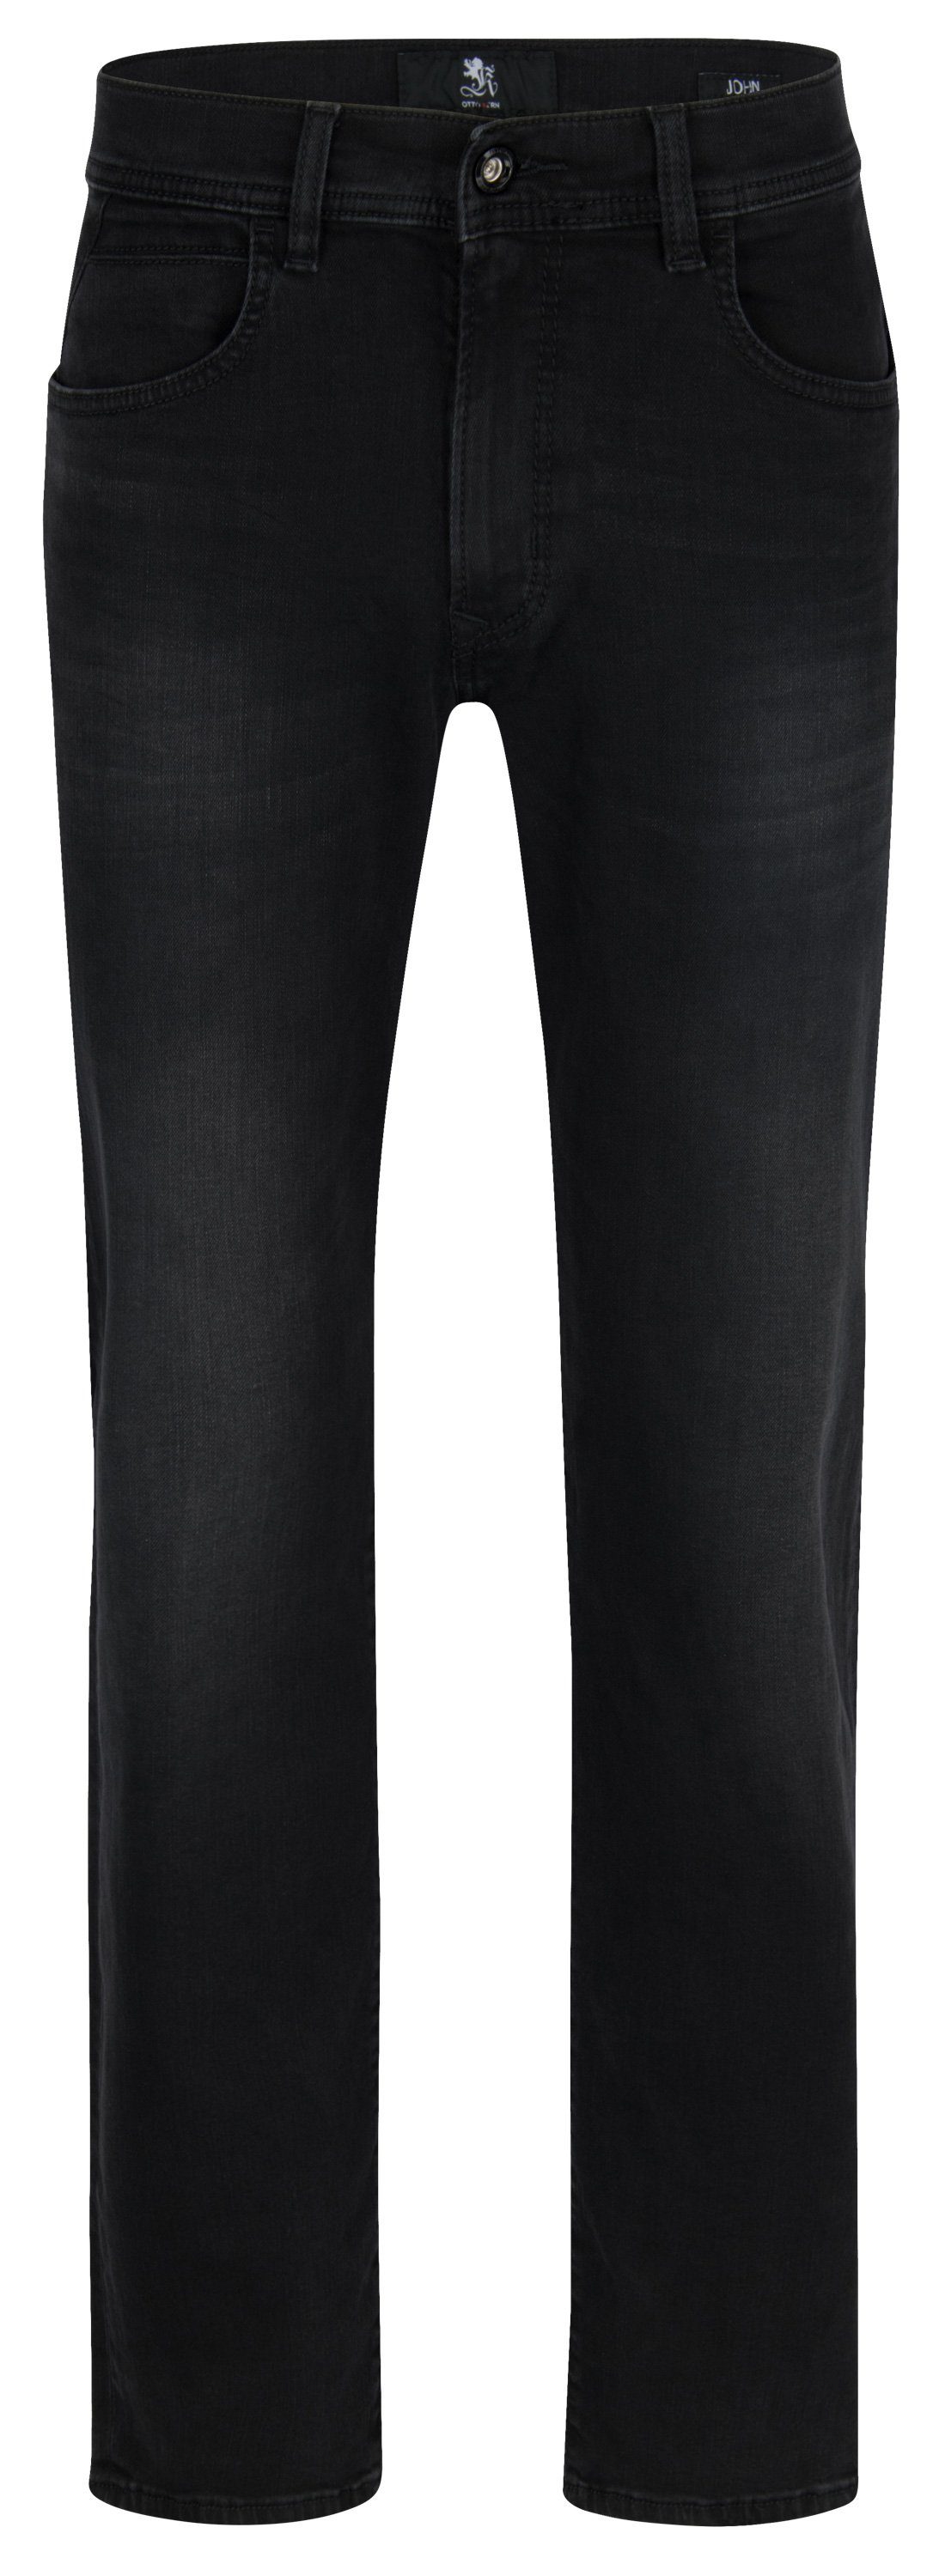  Kern 5-Pocket-Jeans OTTO KERN JOHN dusty black used buffies 67151 6853.9814